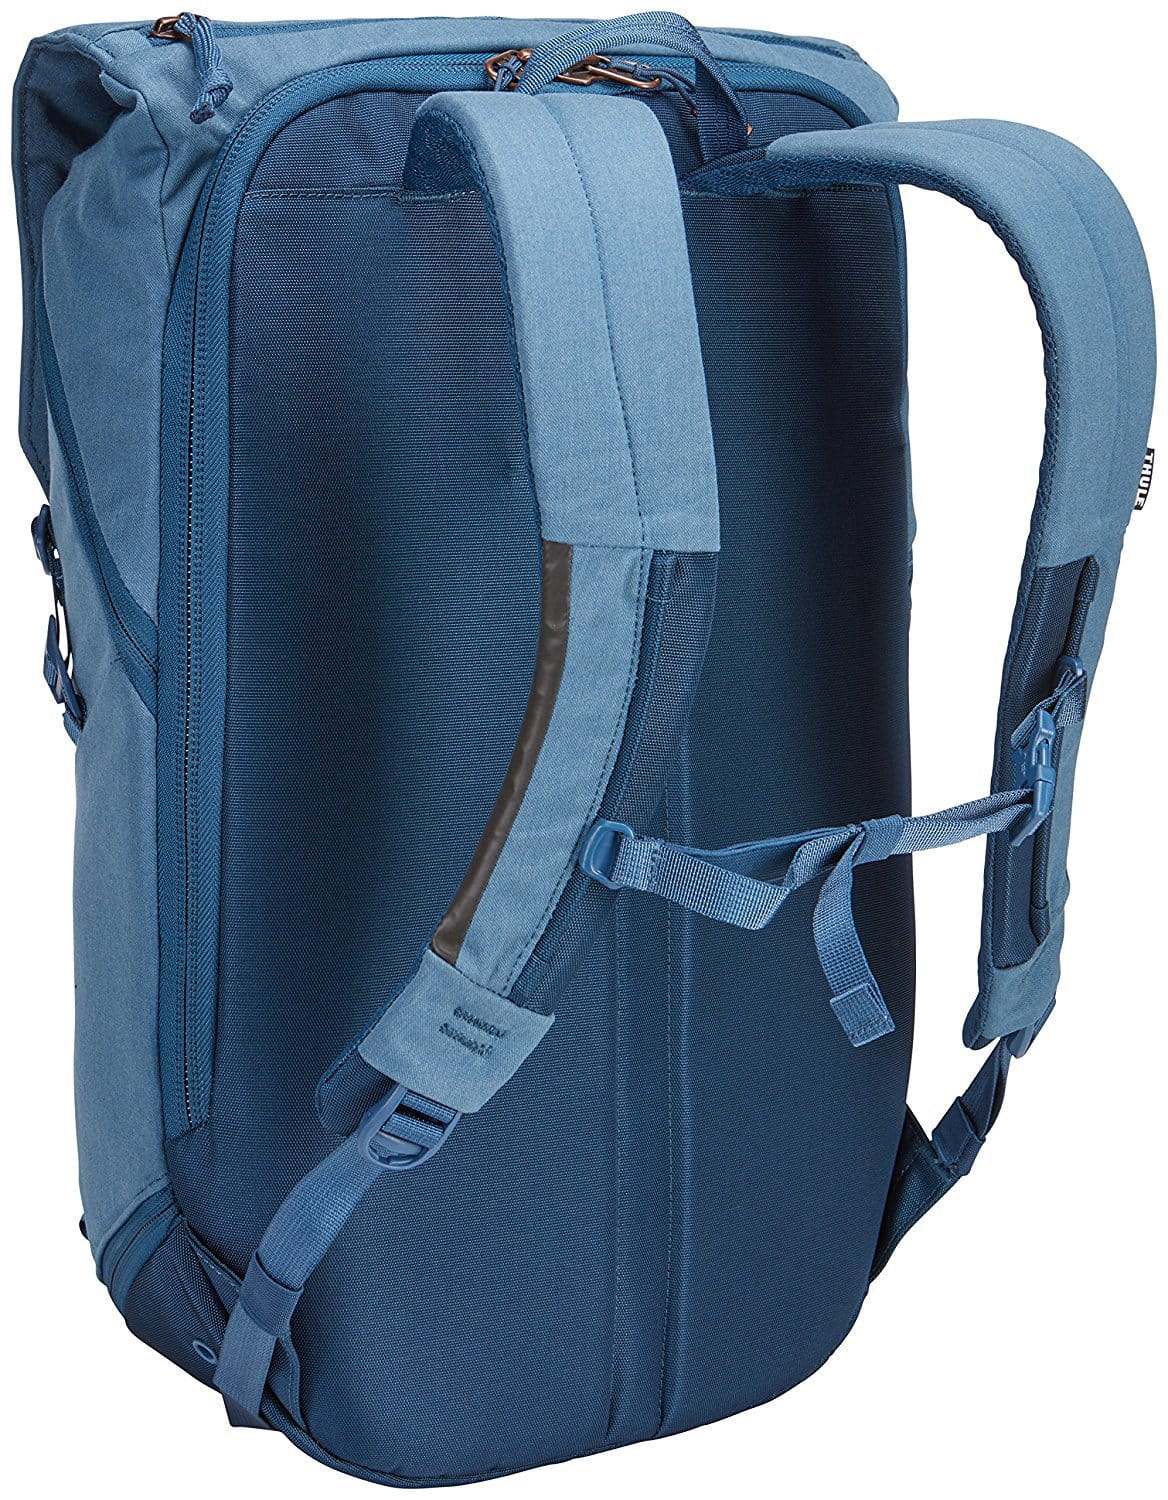 Backpack THULE Vea / 25L / 800D nylon / Navy